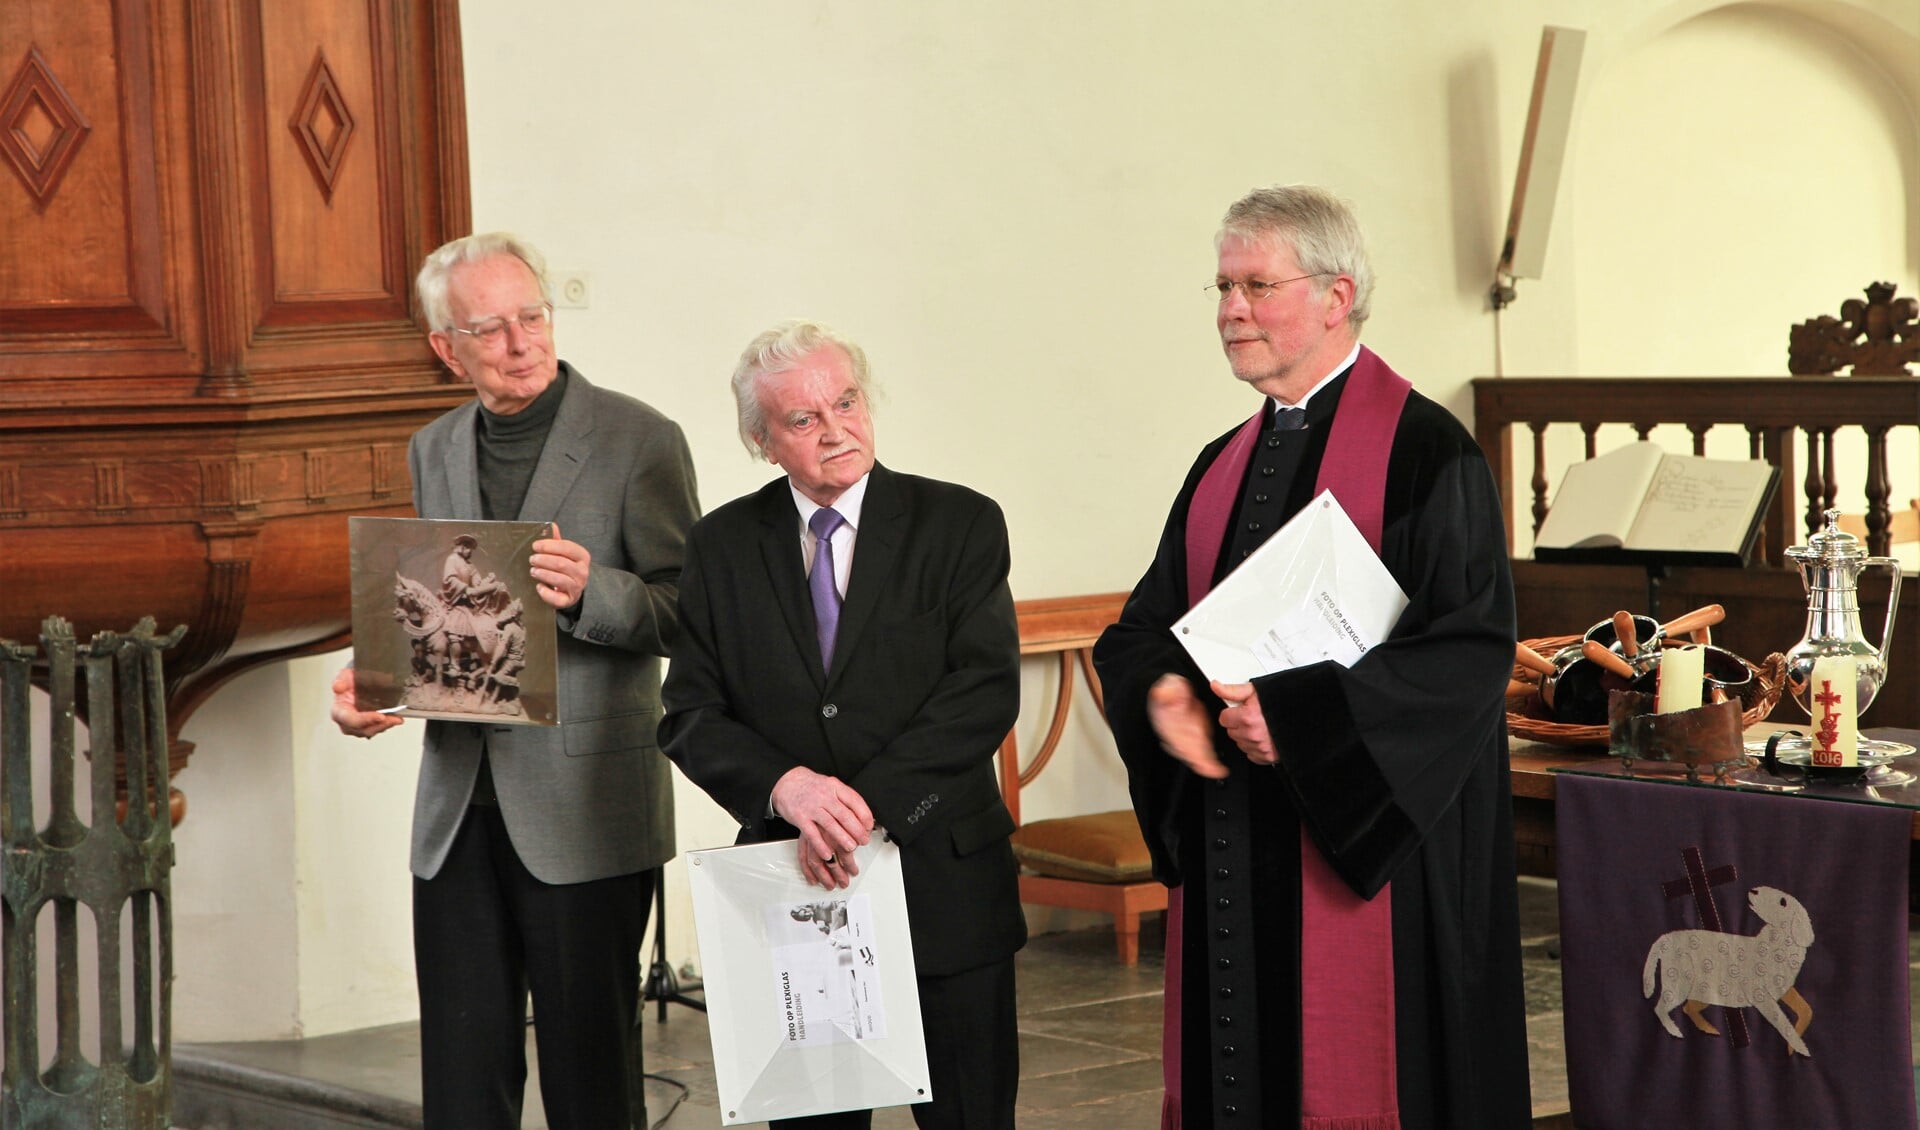 De predikanten Venemans (links), Koelewijn en van de Meent hebben als interim-predikant afscheid genomen van de wijkgemeente Martini van de Oude Kerk te Voorburg (foto: A. van Mourik).